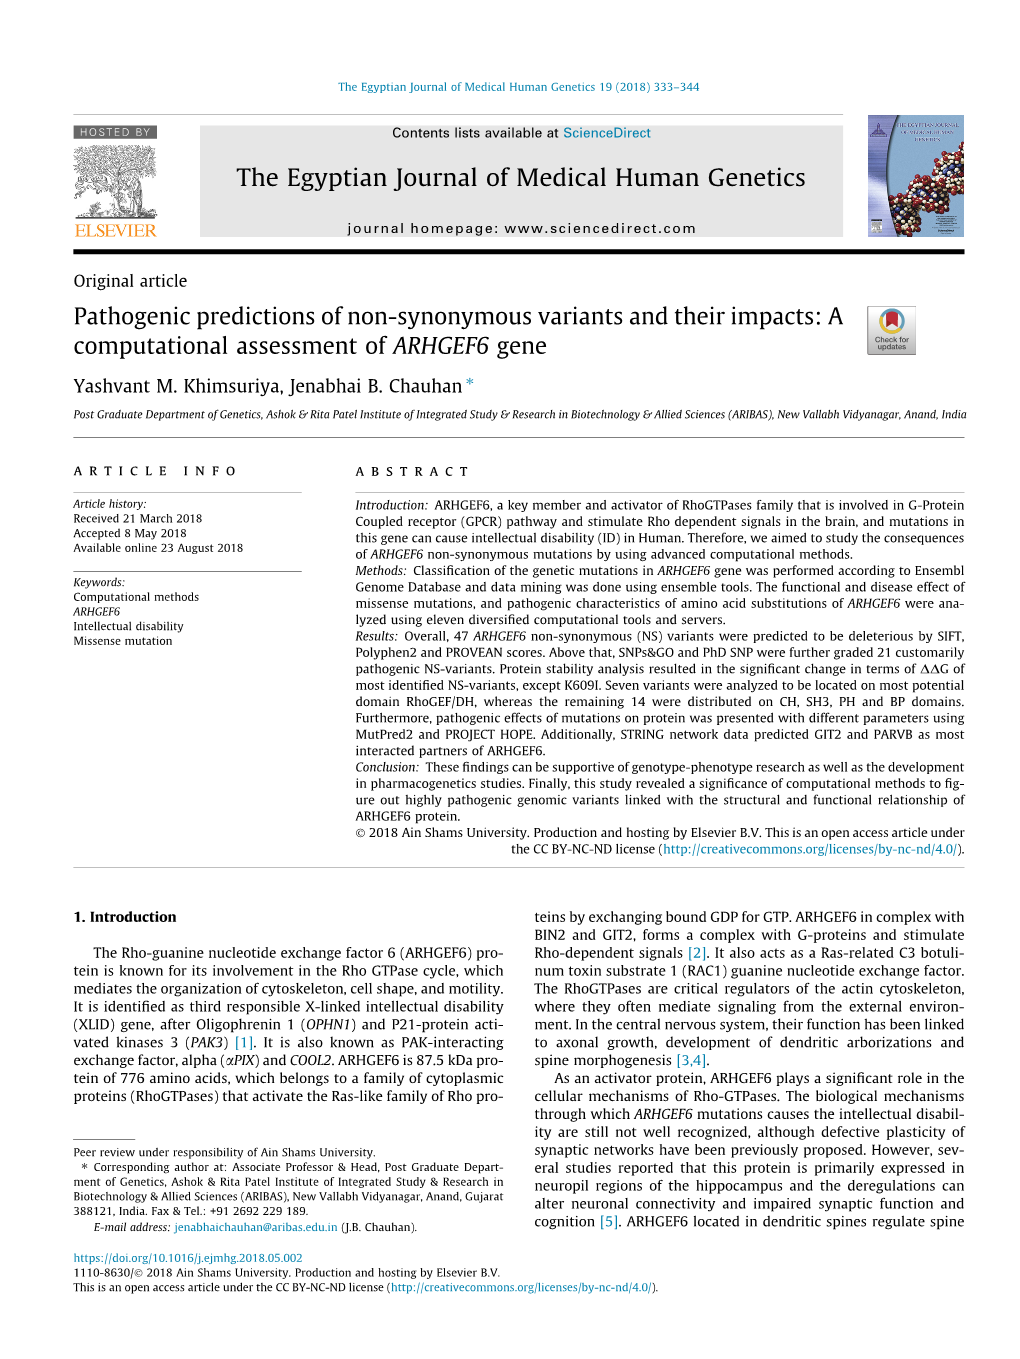 A Computational Assessment of ARHGEF6 Gene ⇑ Yashvant M